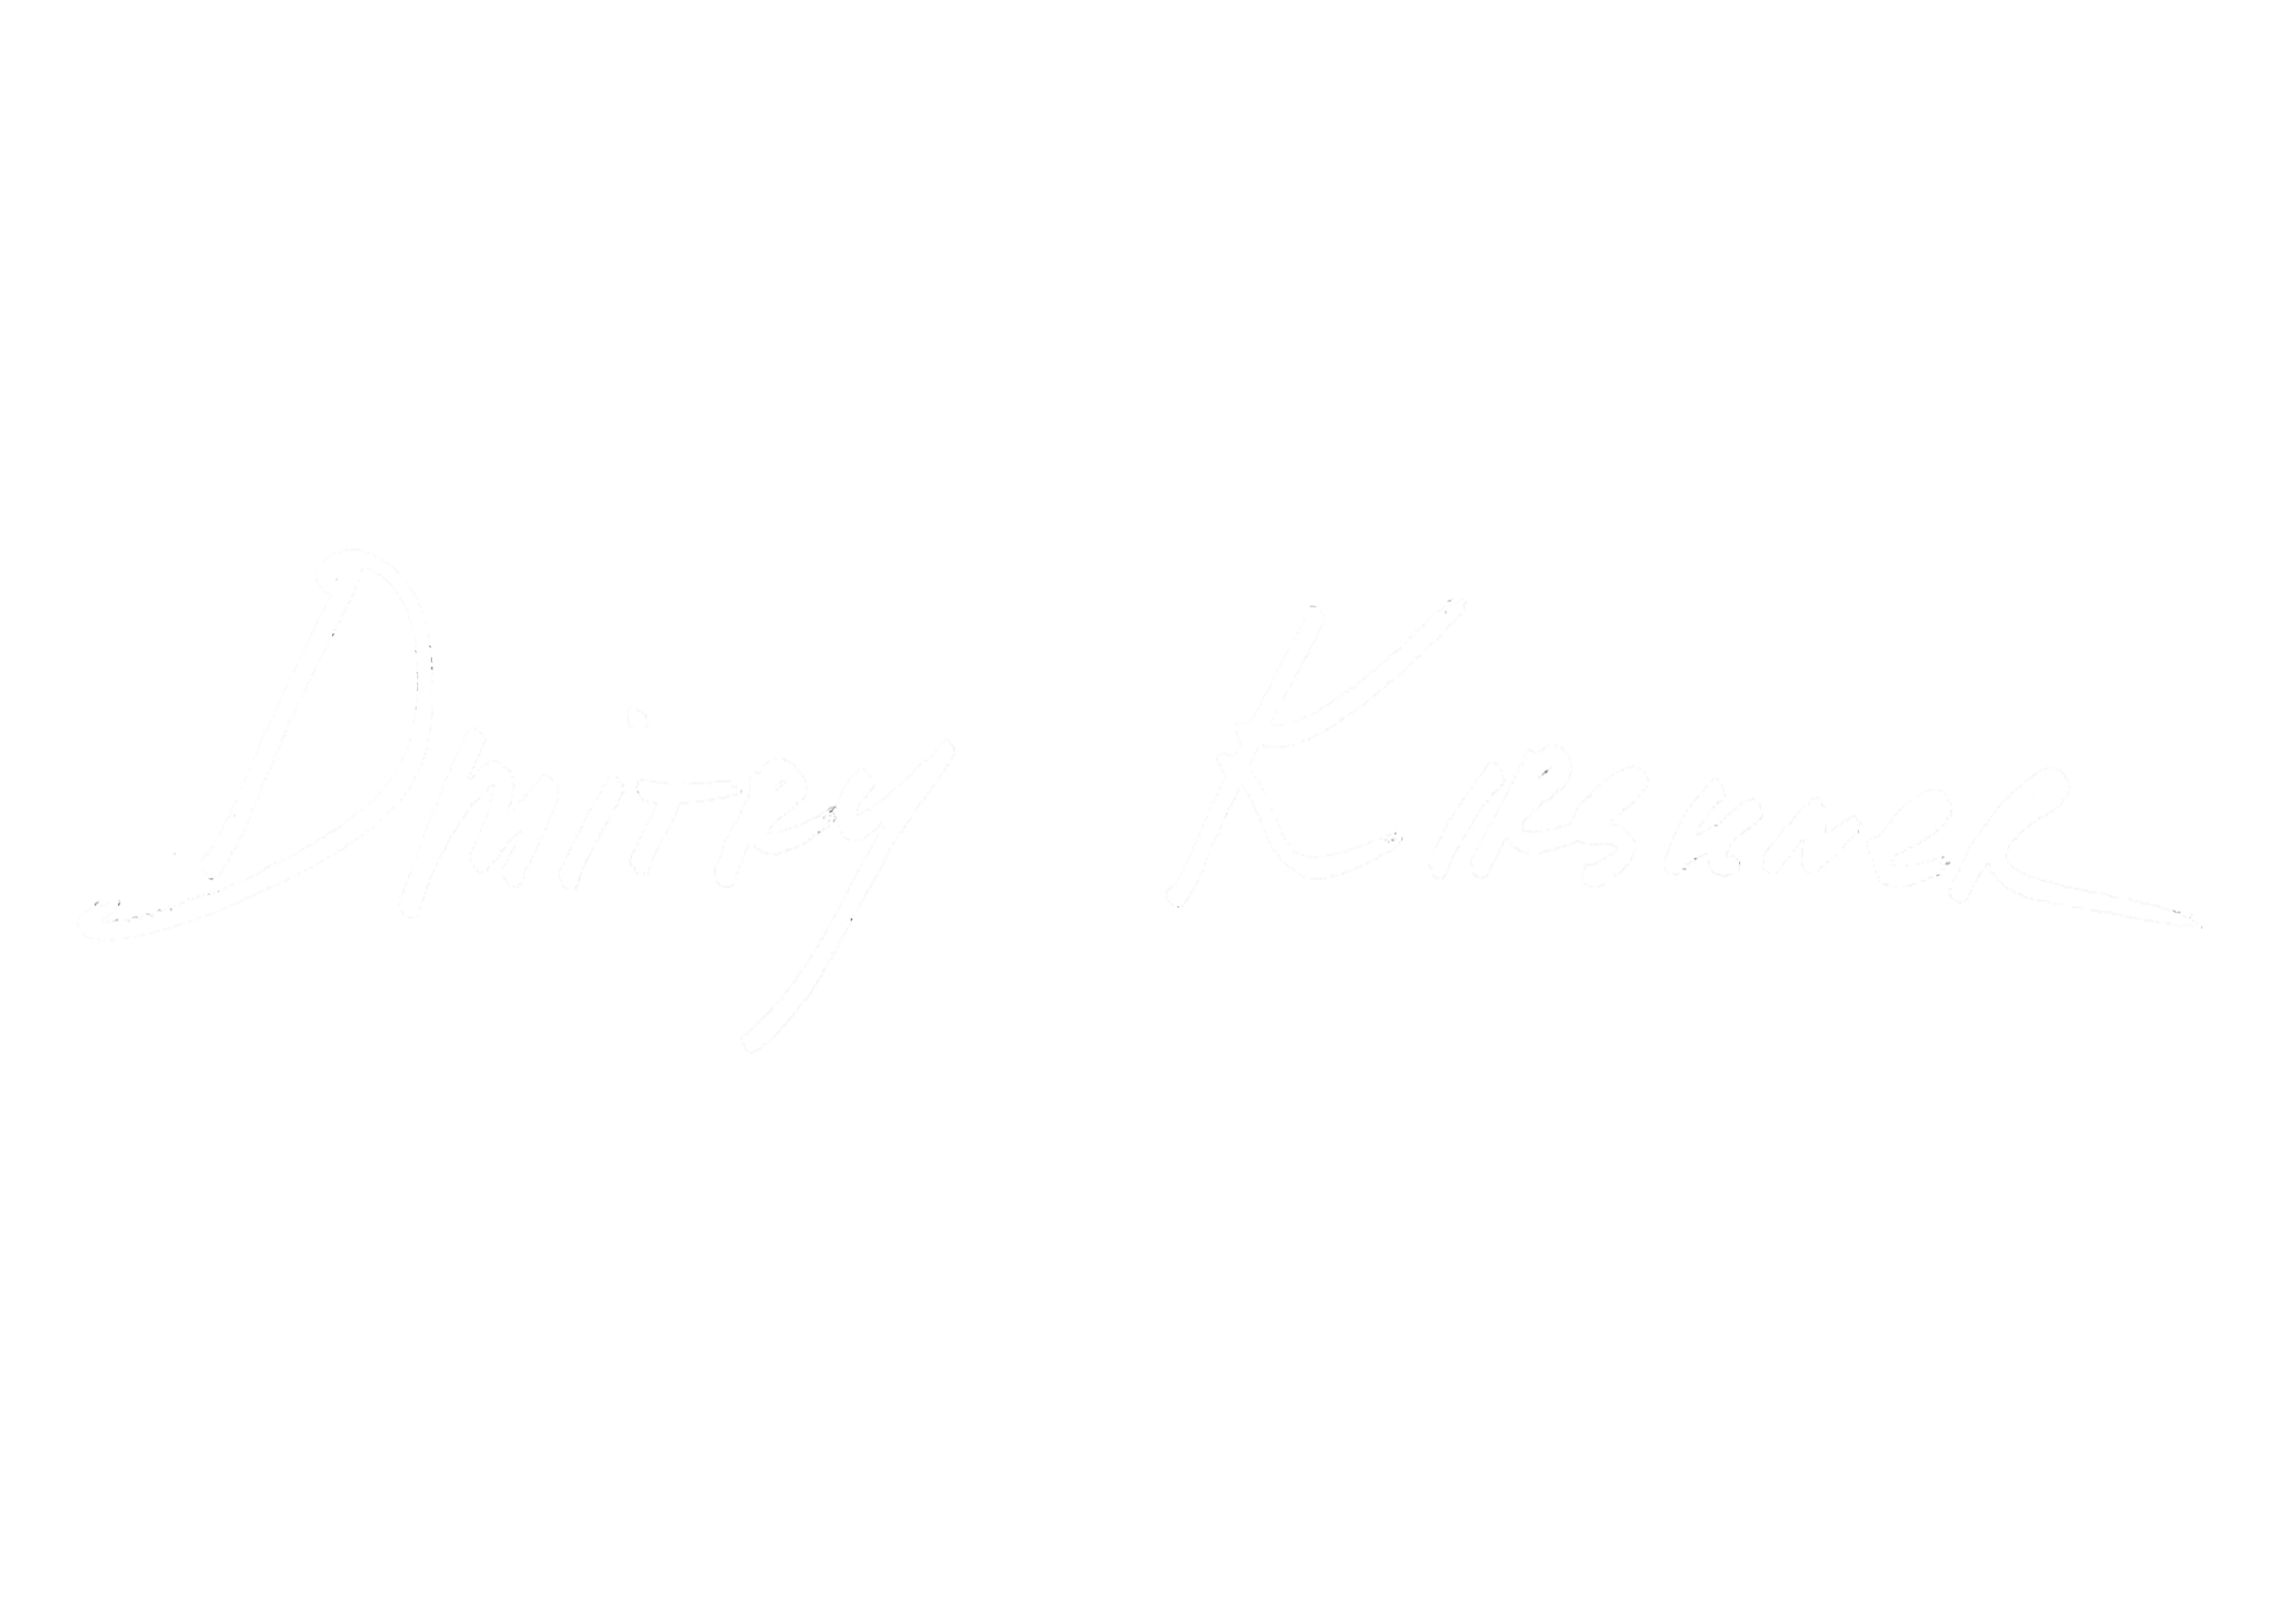 Dmitry Kirshner Fine Art Photography